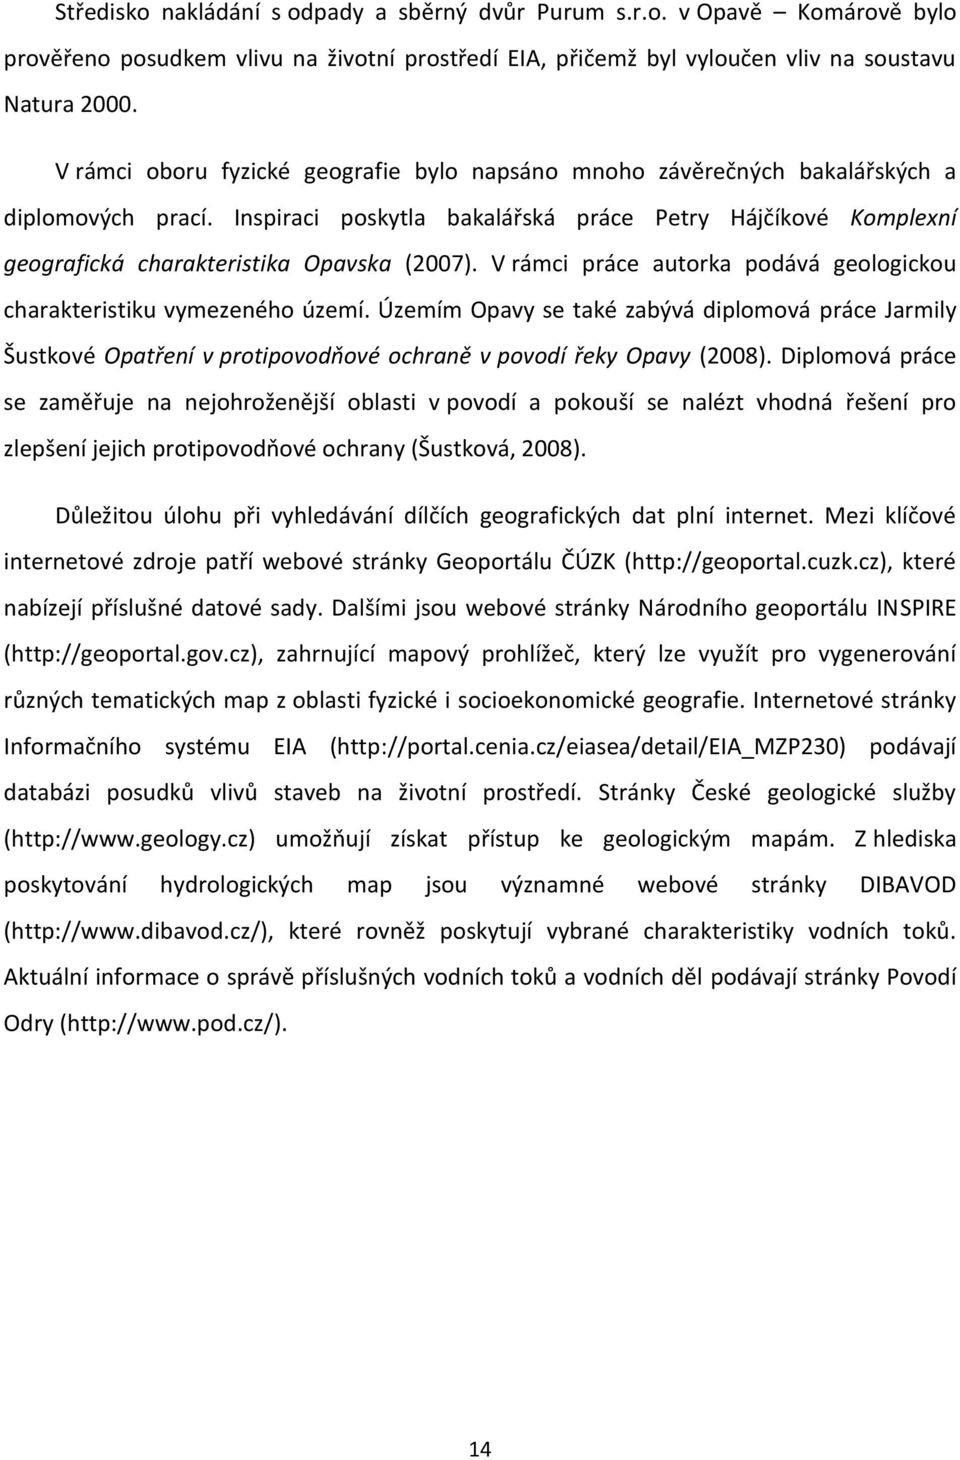 Inspiraci poskytla bakalářská práce Petry Hájčíkové Komplexní geografická charakteristika Opavska (2007). V rámci práce autorka podává geologickou charakteristiku vymezeného území.